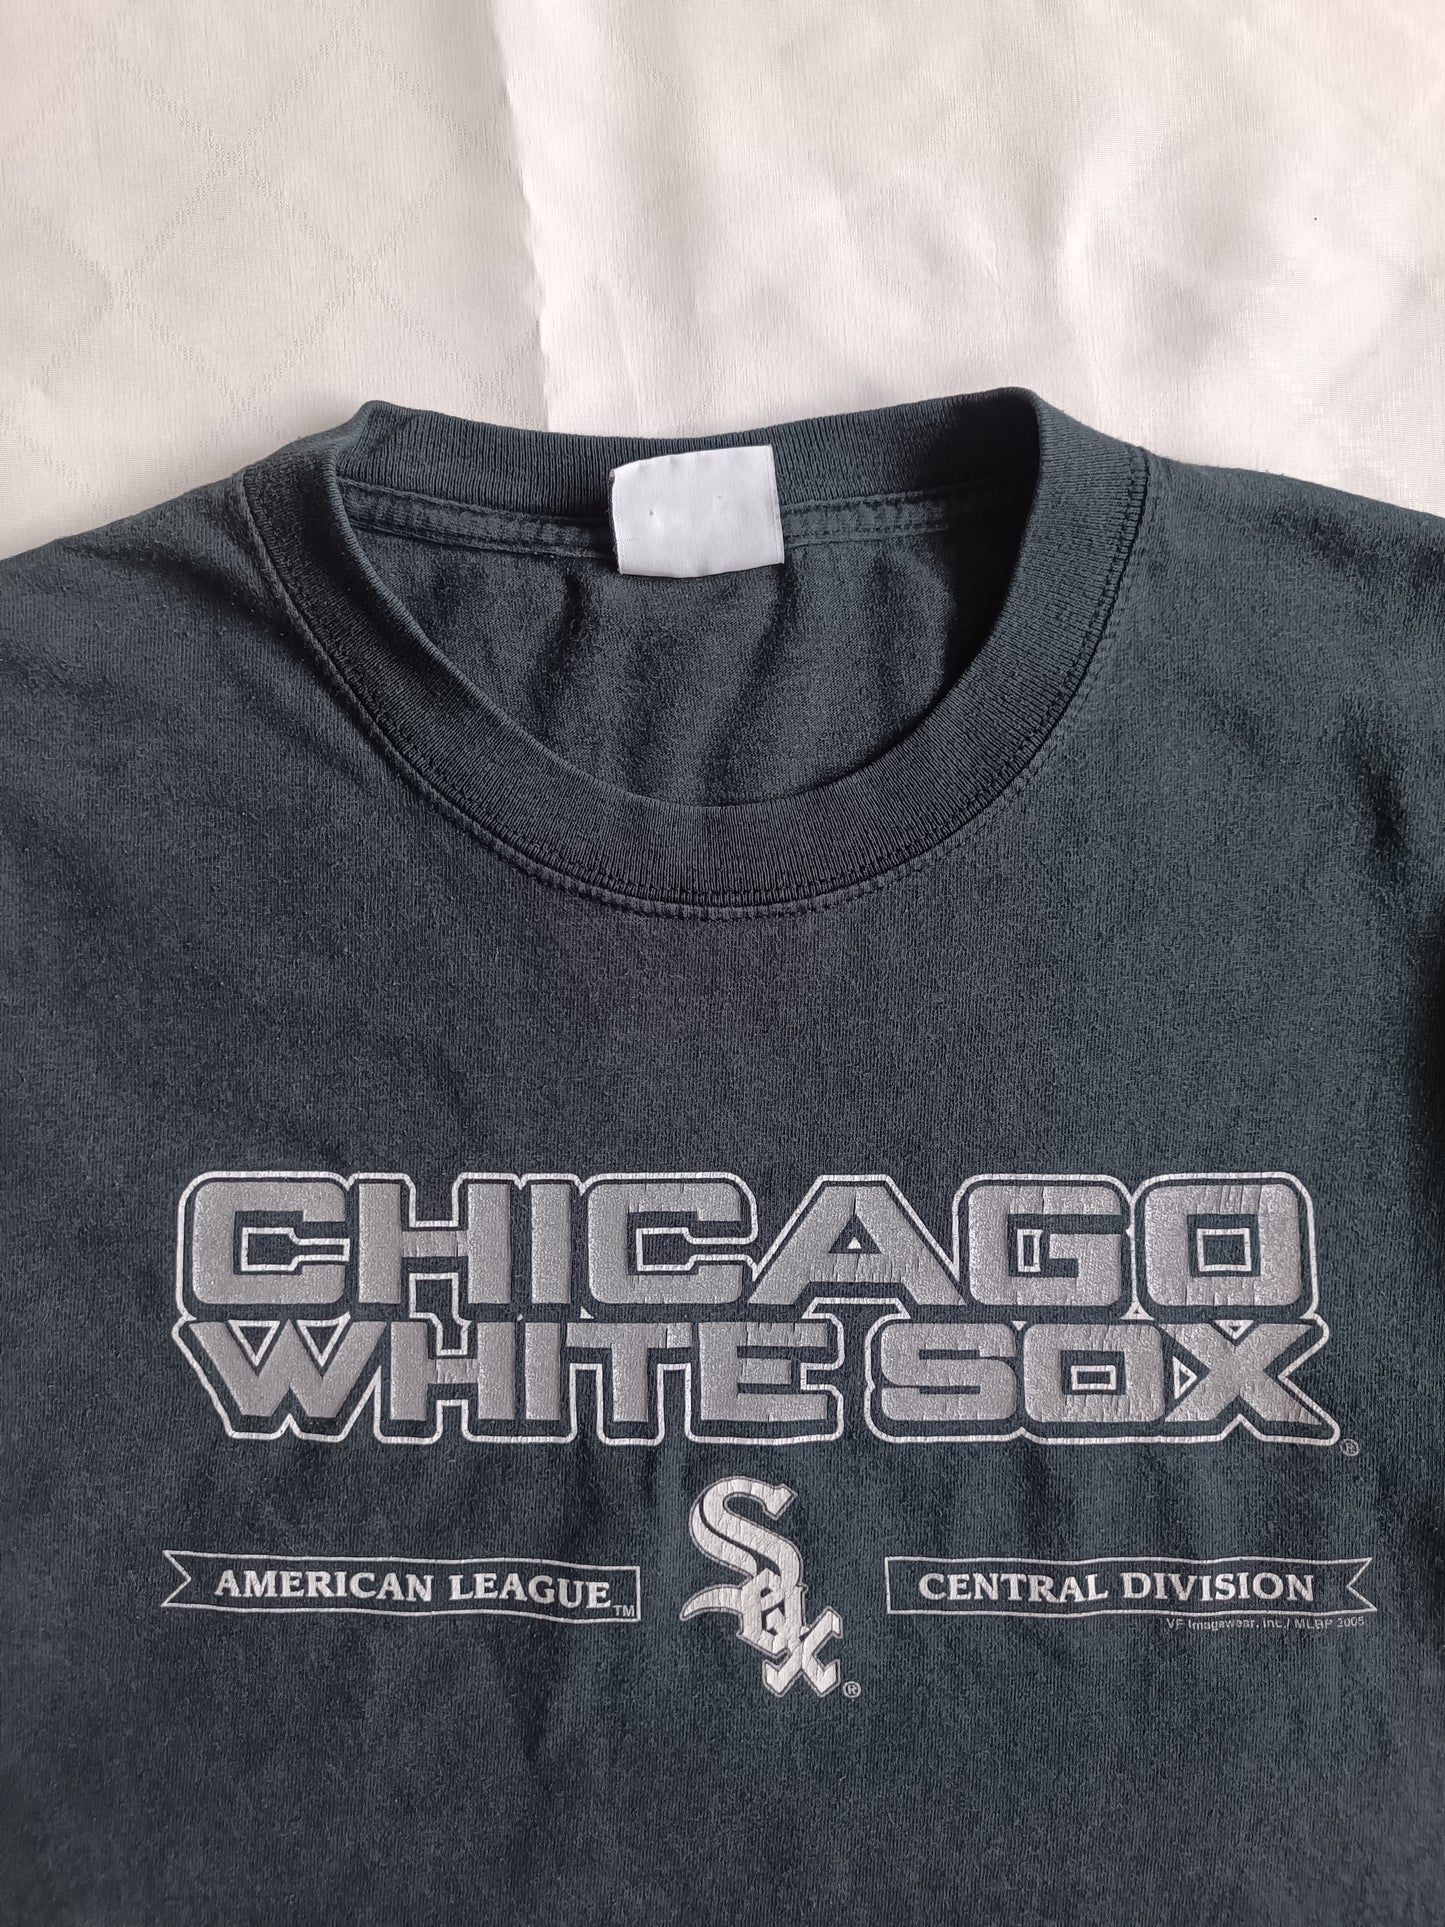 Chicago White Sox 2005 - L